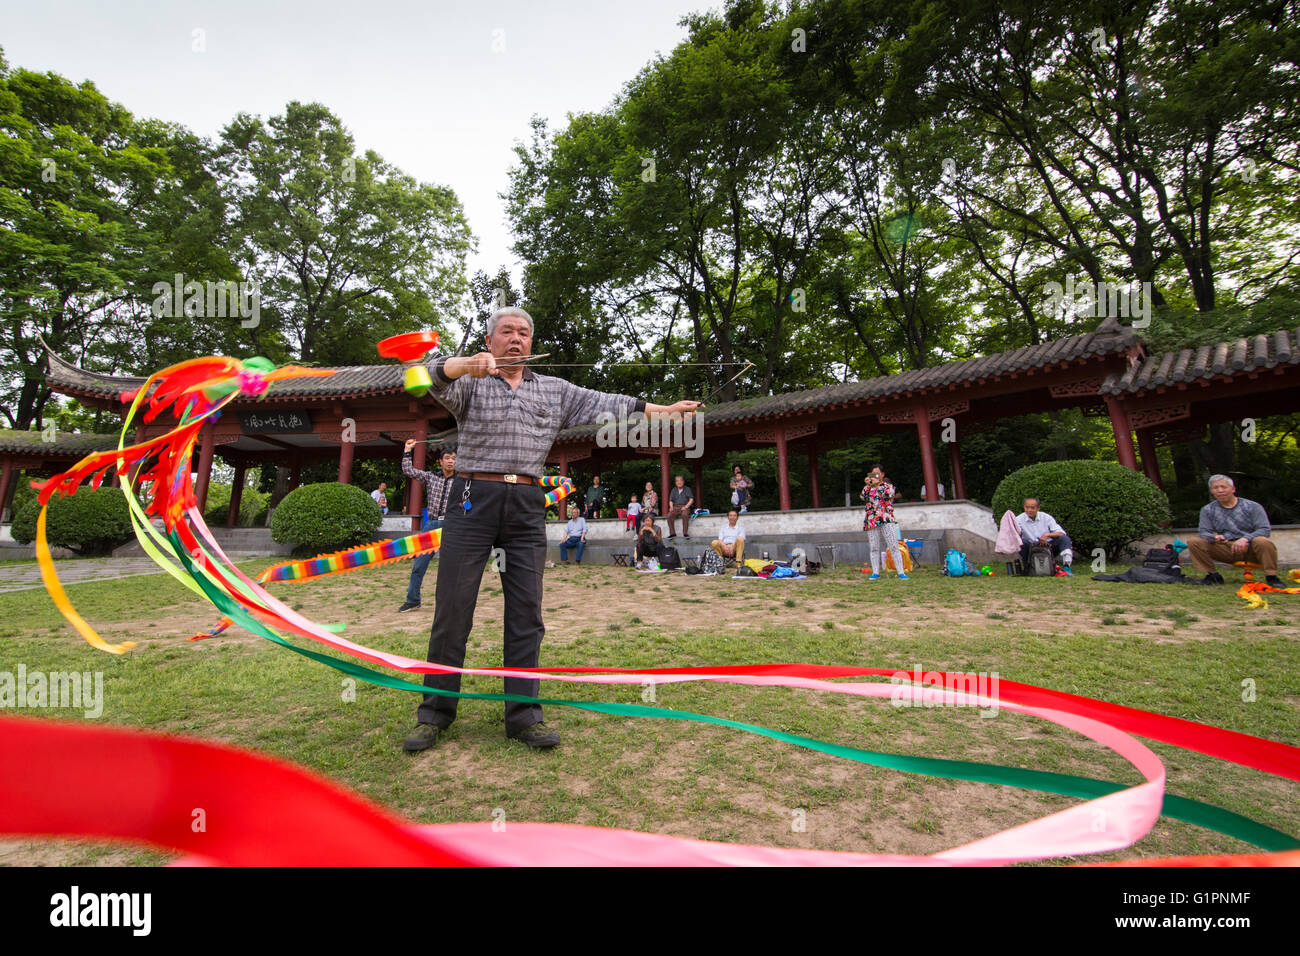 Hombre chino superior prácticas deportivas o funda de cinta ondeando la danza en el parque de Nanjing en China Foto de stock